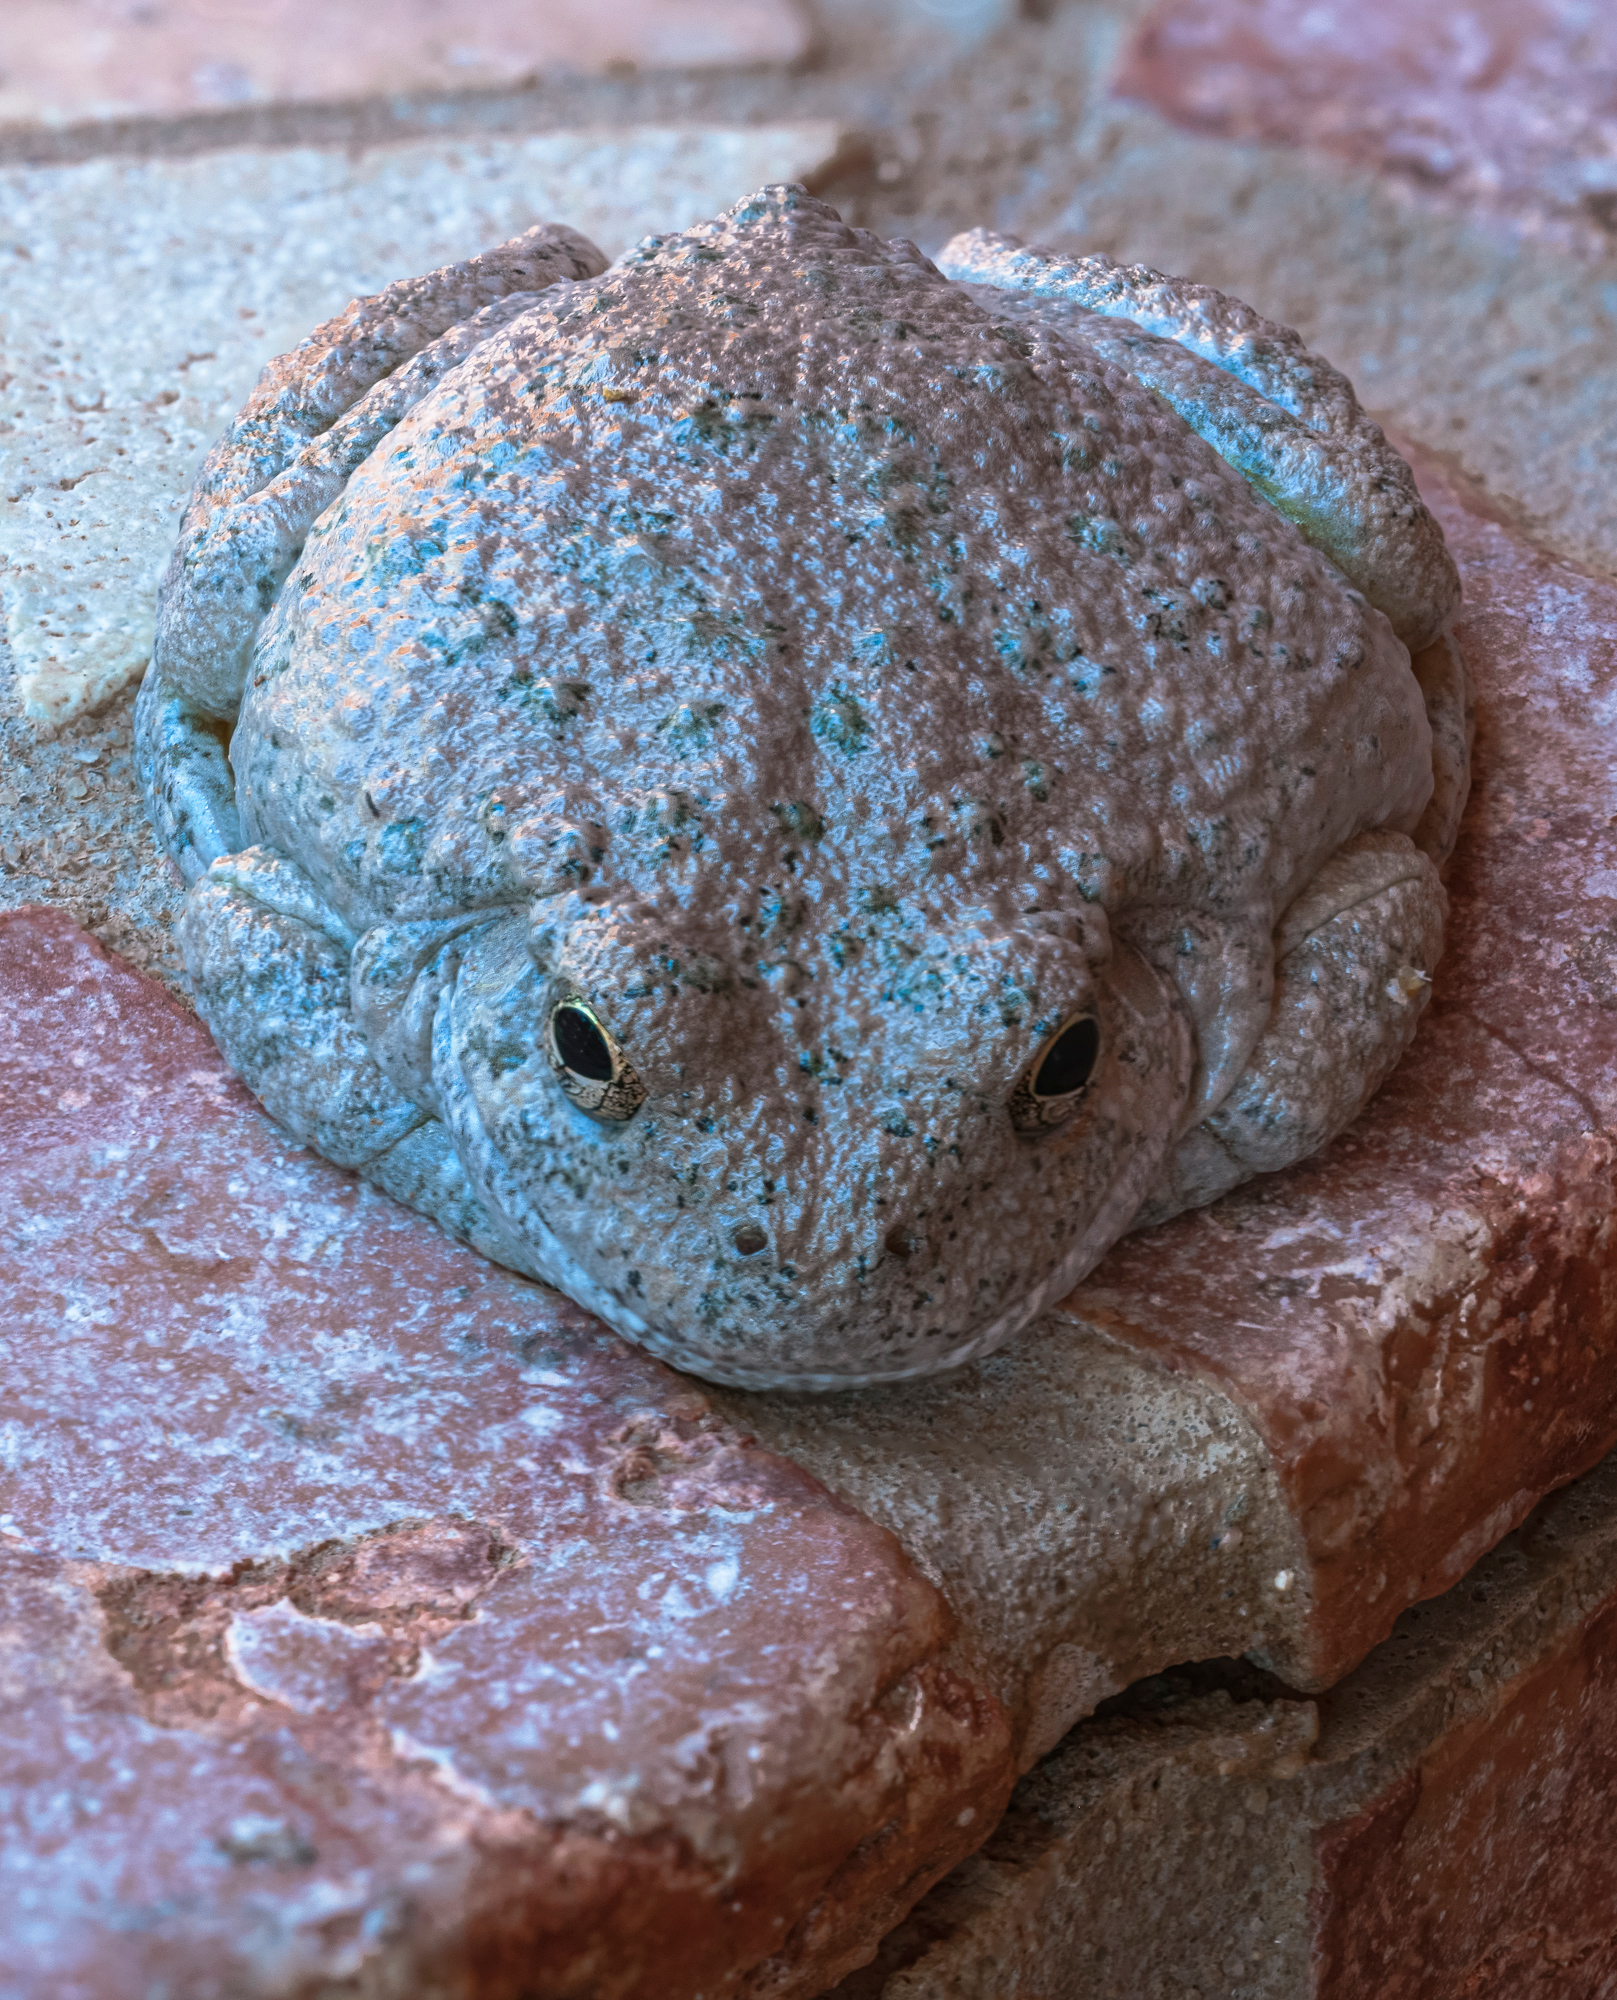 “Arizona Toad”, 2014, Sedona, AZ